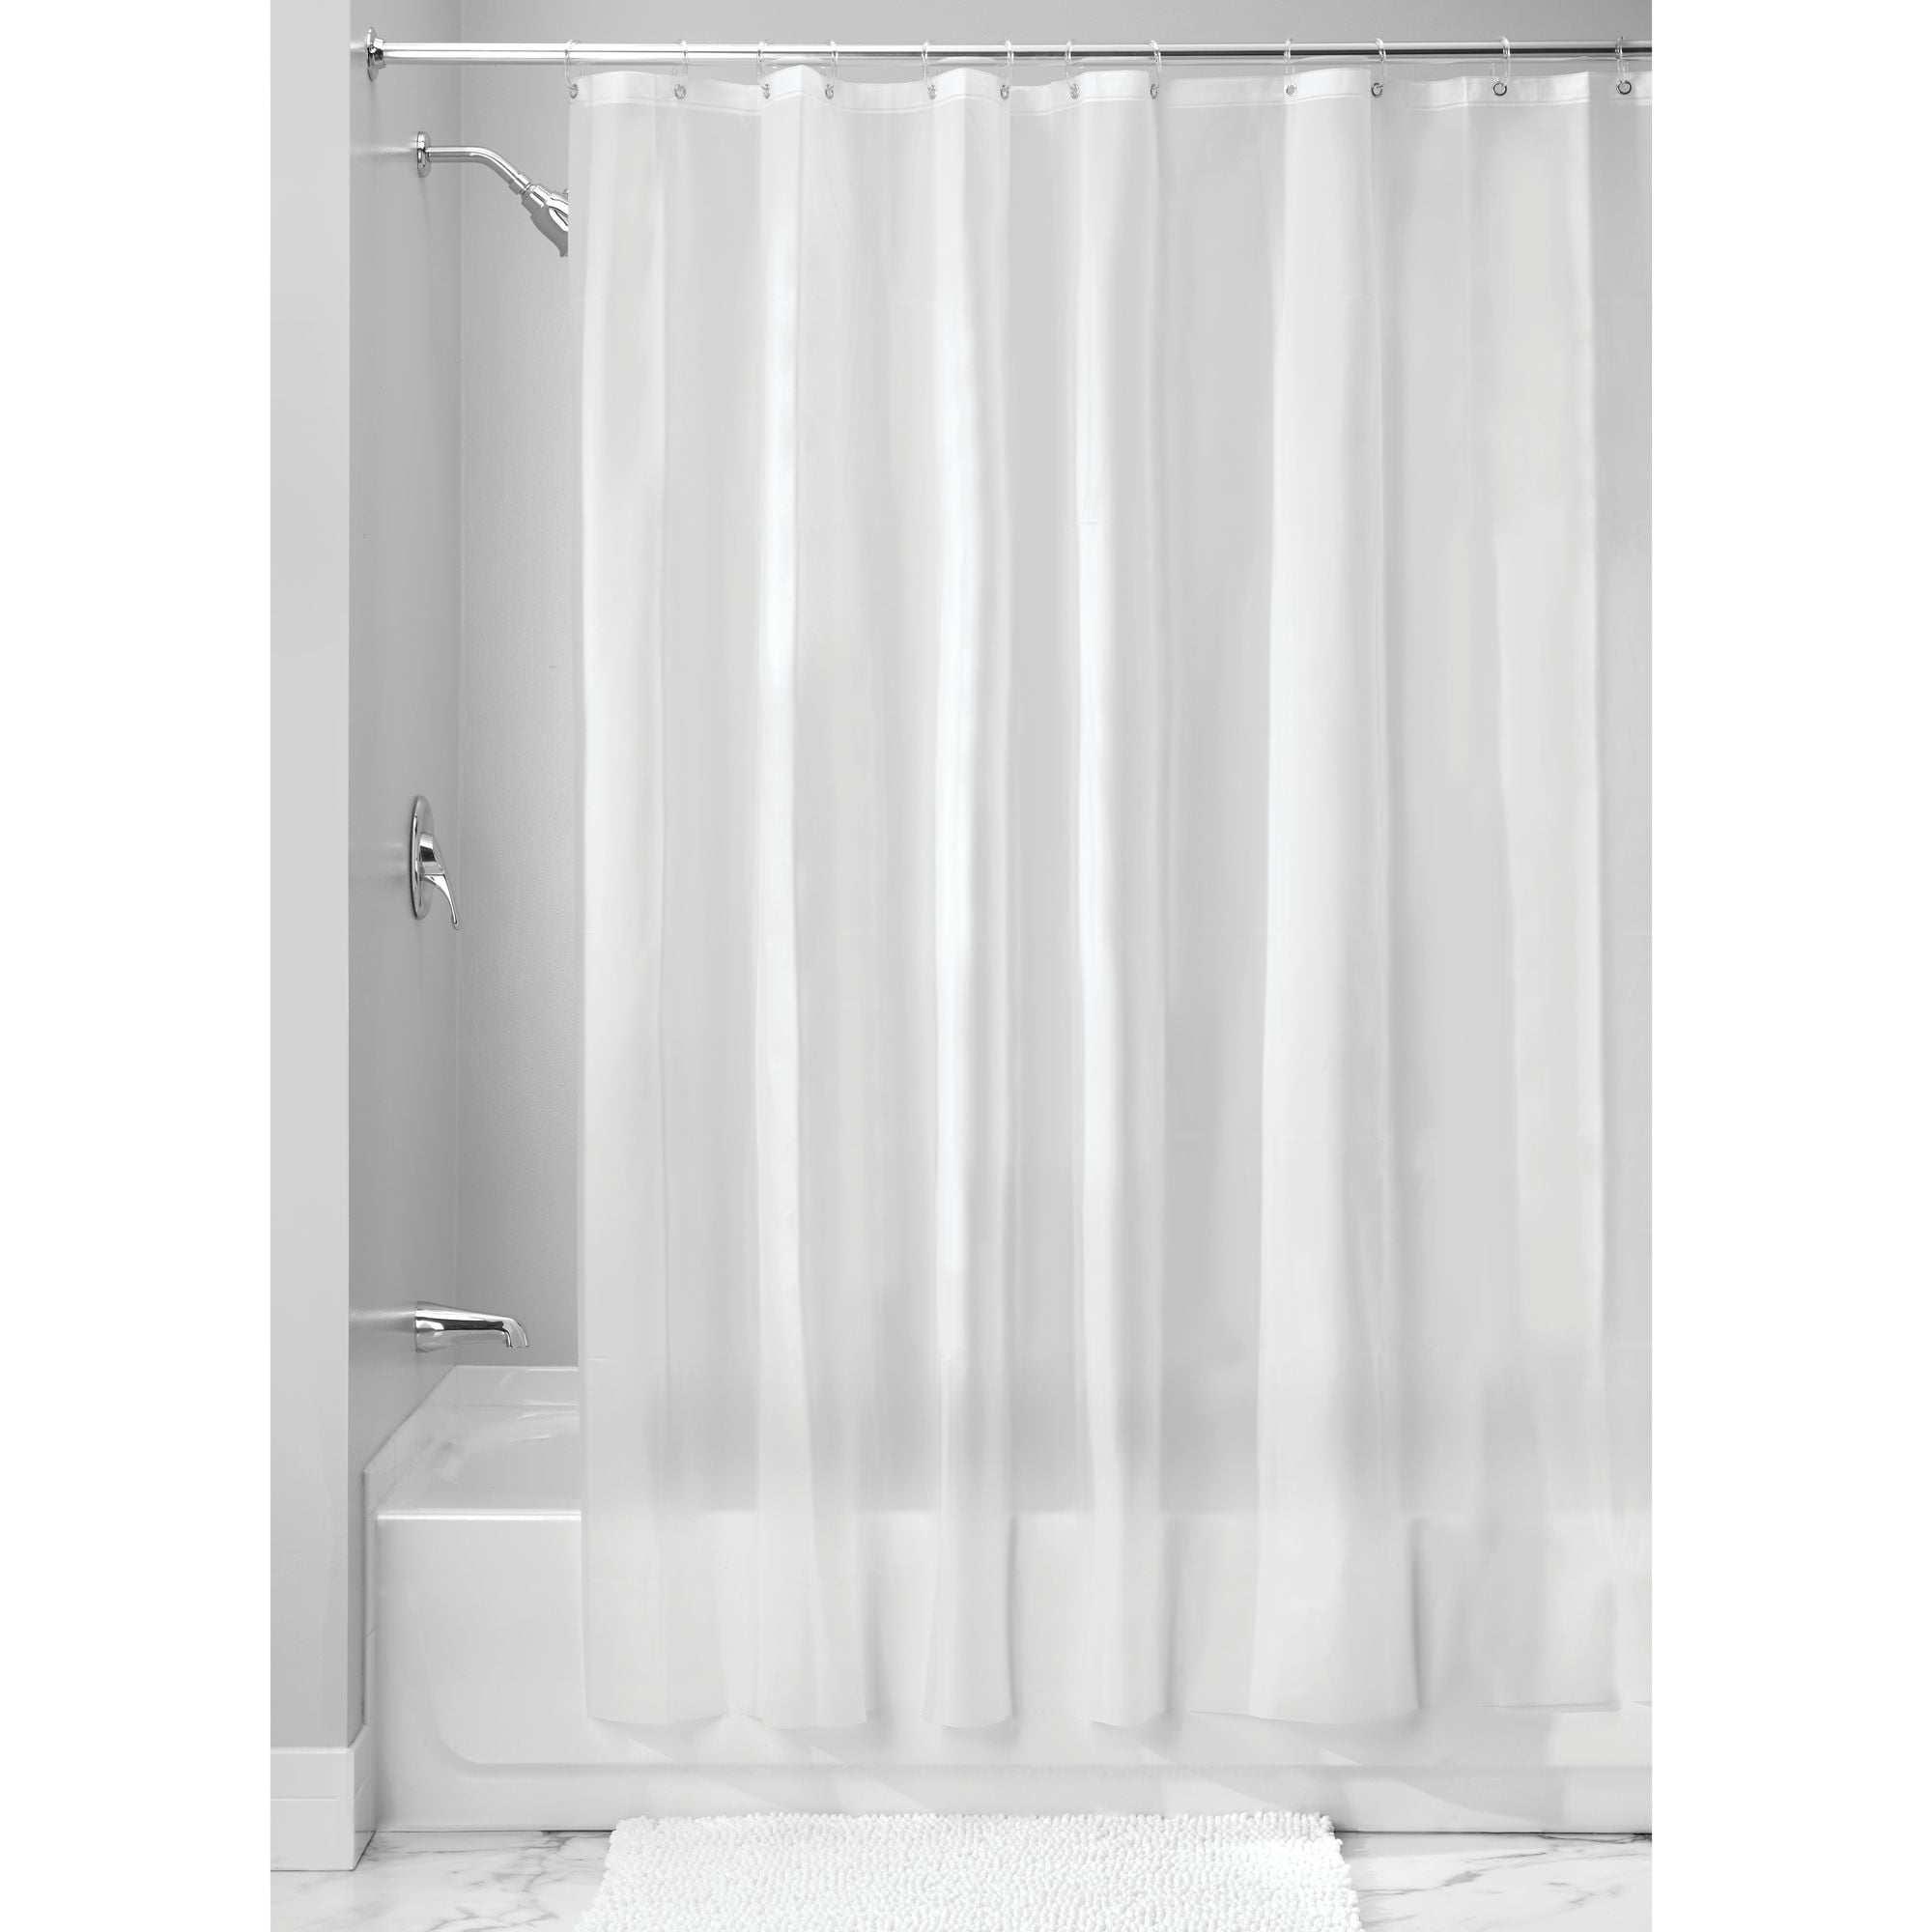 Interdesign Eva 5 Gauge Shower, 108 Shower Curtain Rod